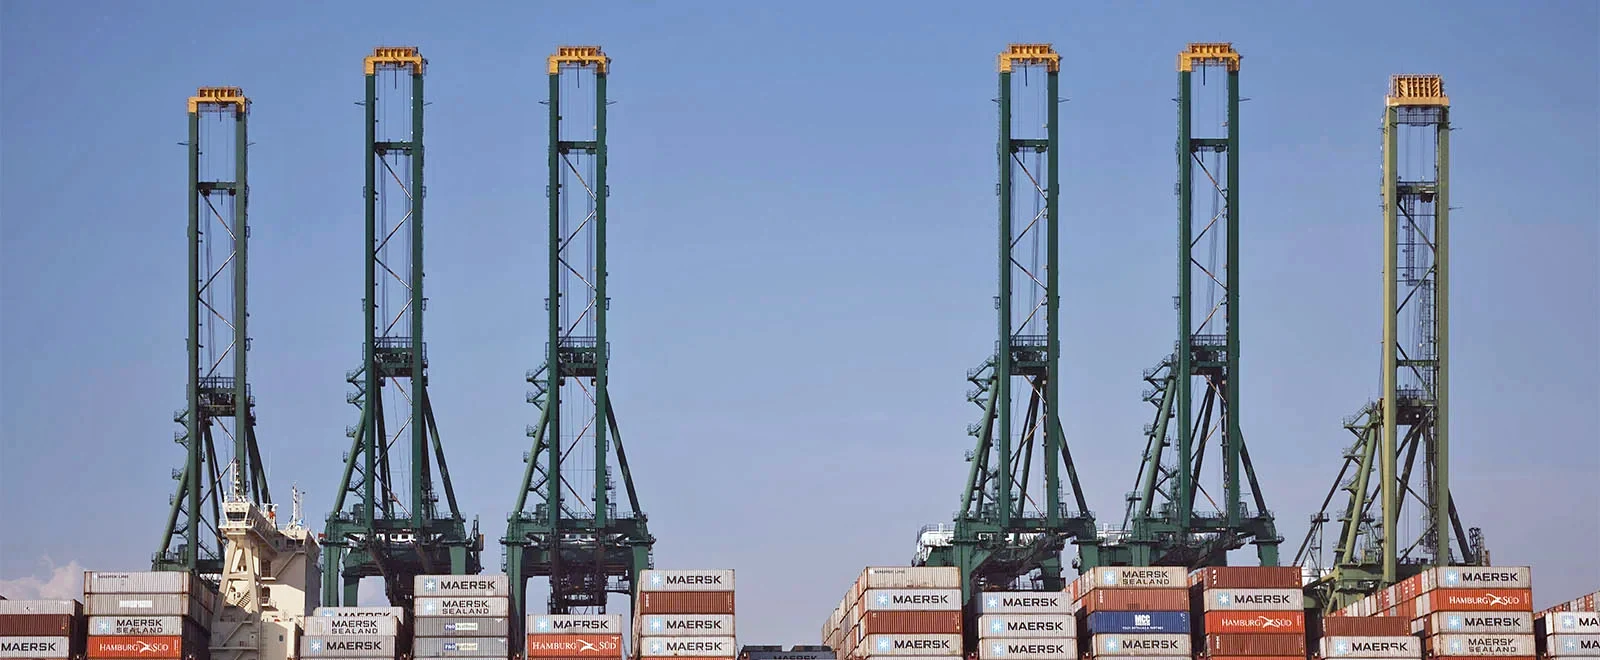 express-freight-cranes